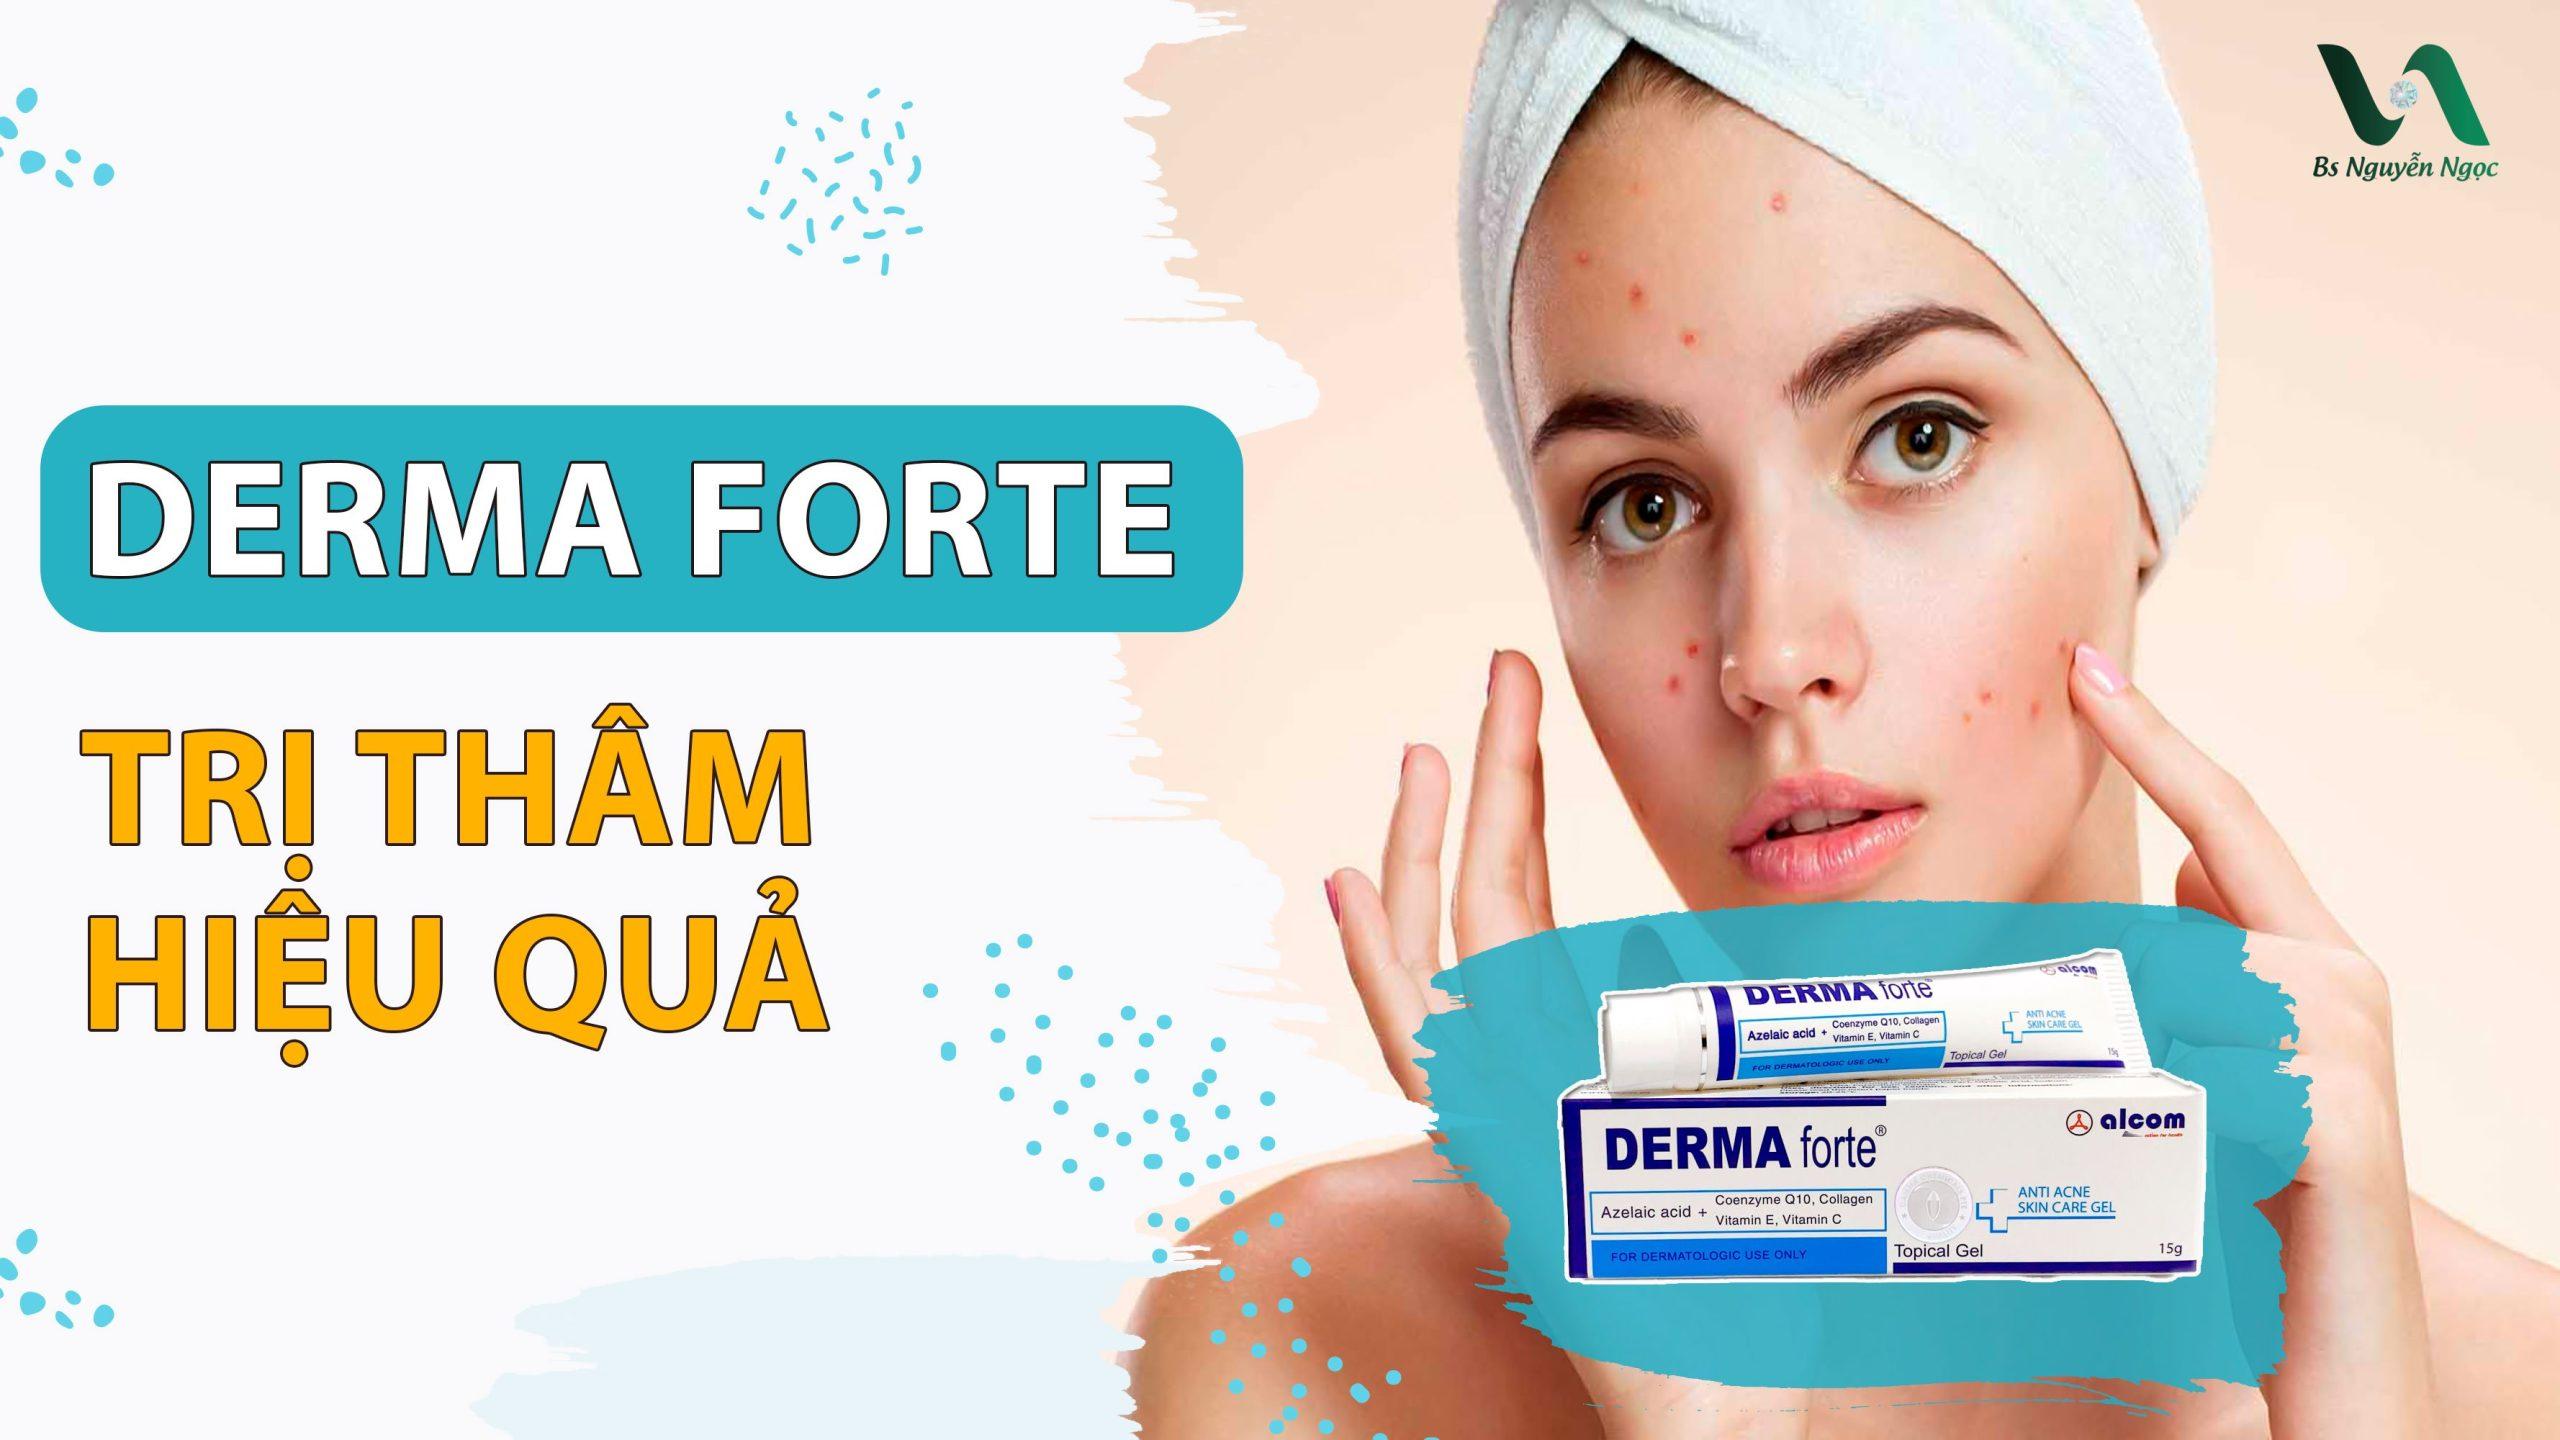 Bôi Derma Forte bao lâu thì rửa mặt? Cách dùng hiệu quả